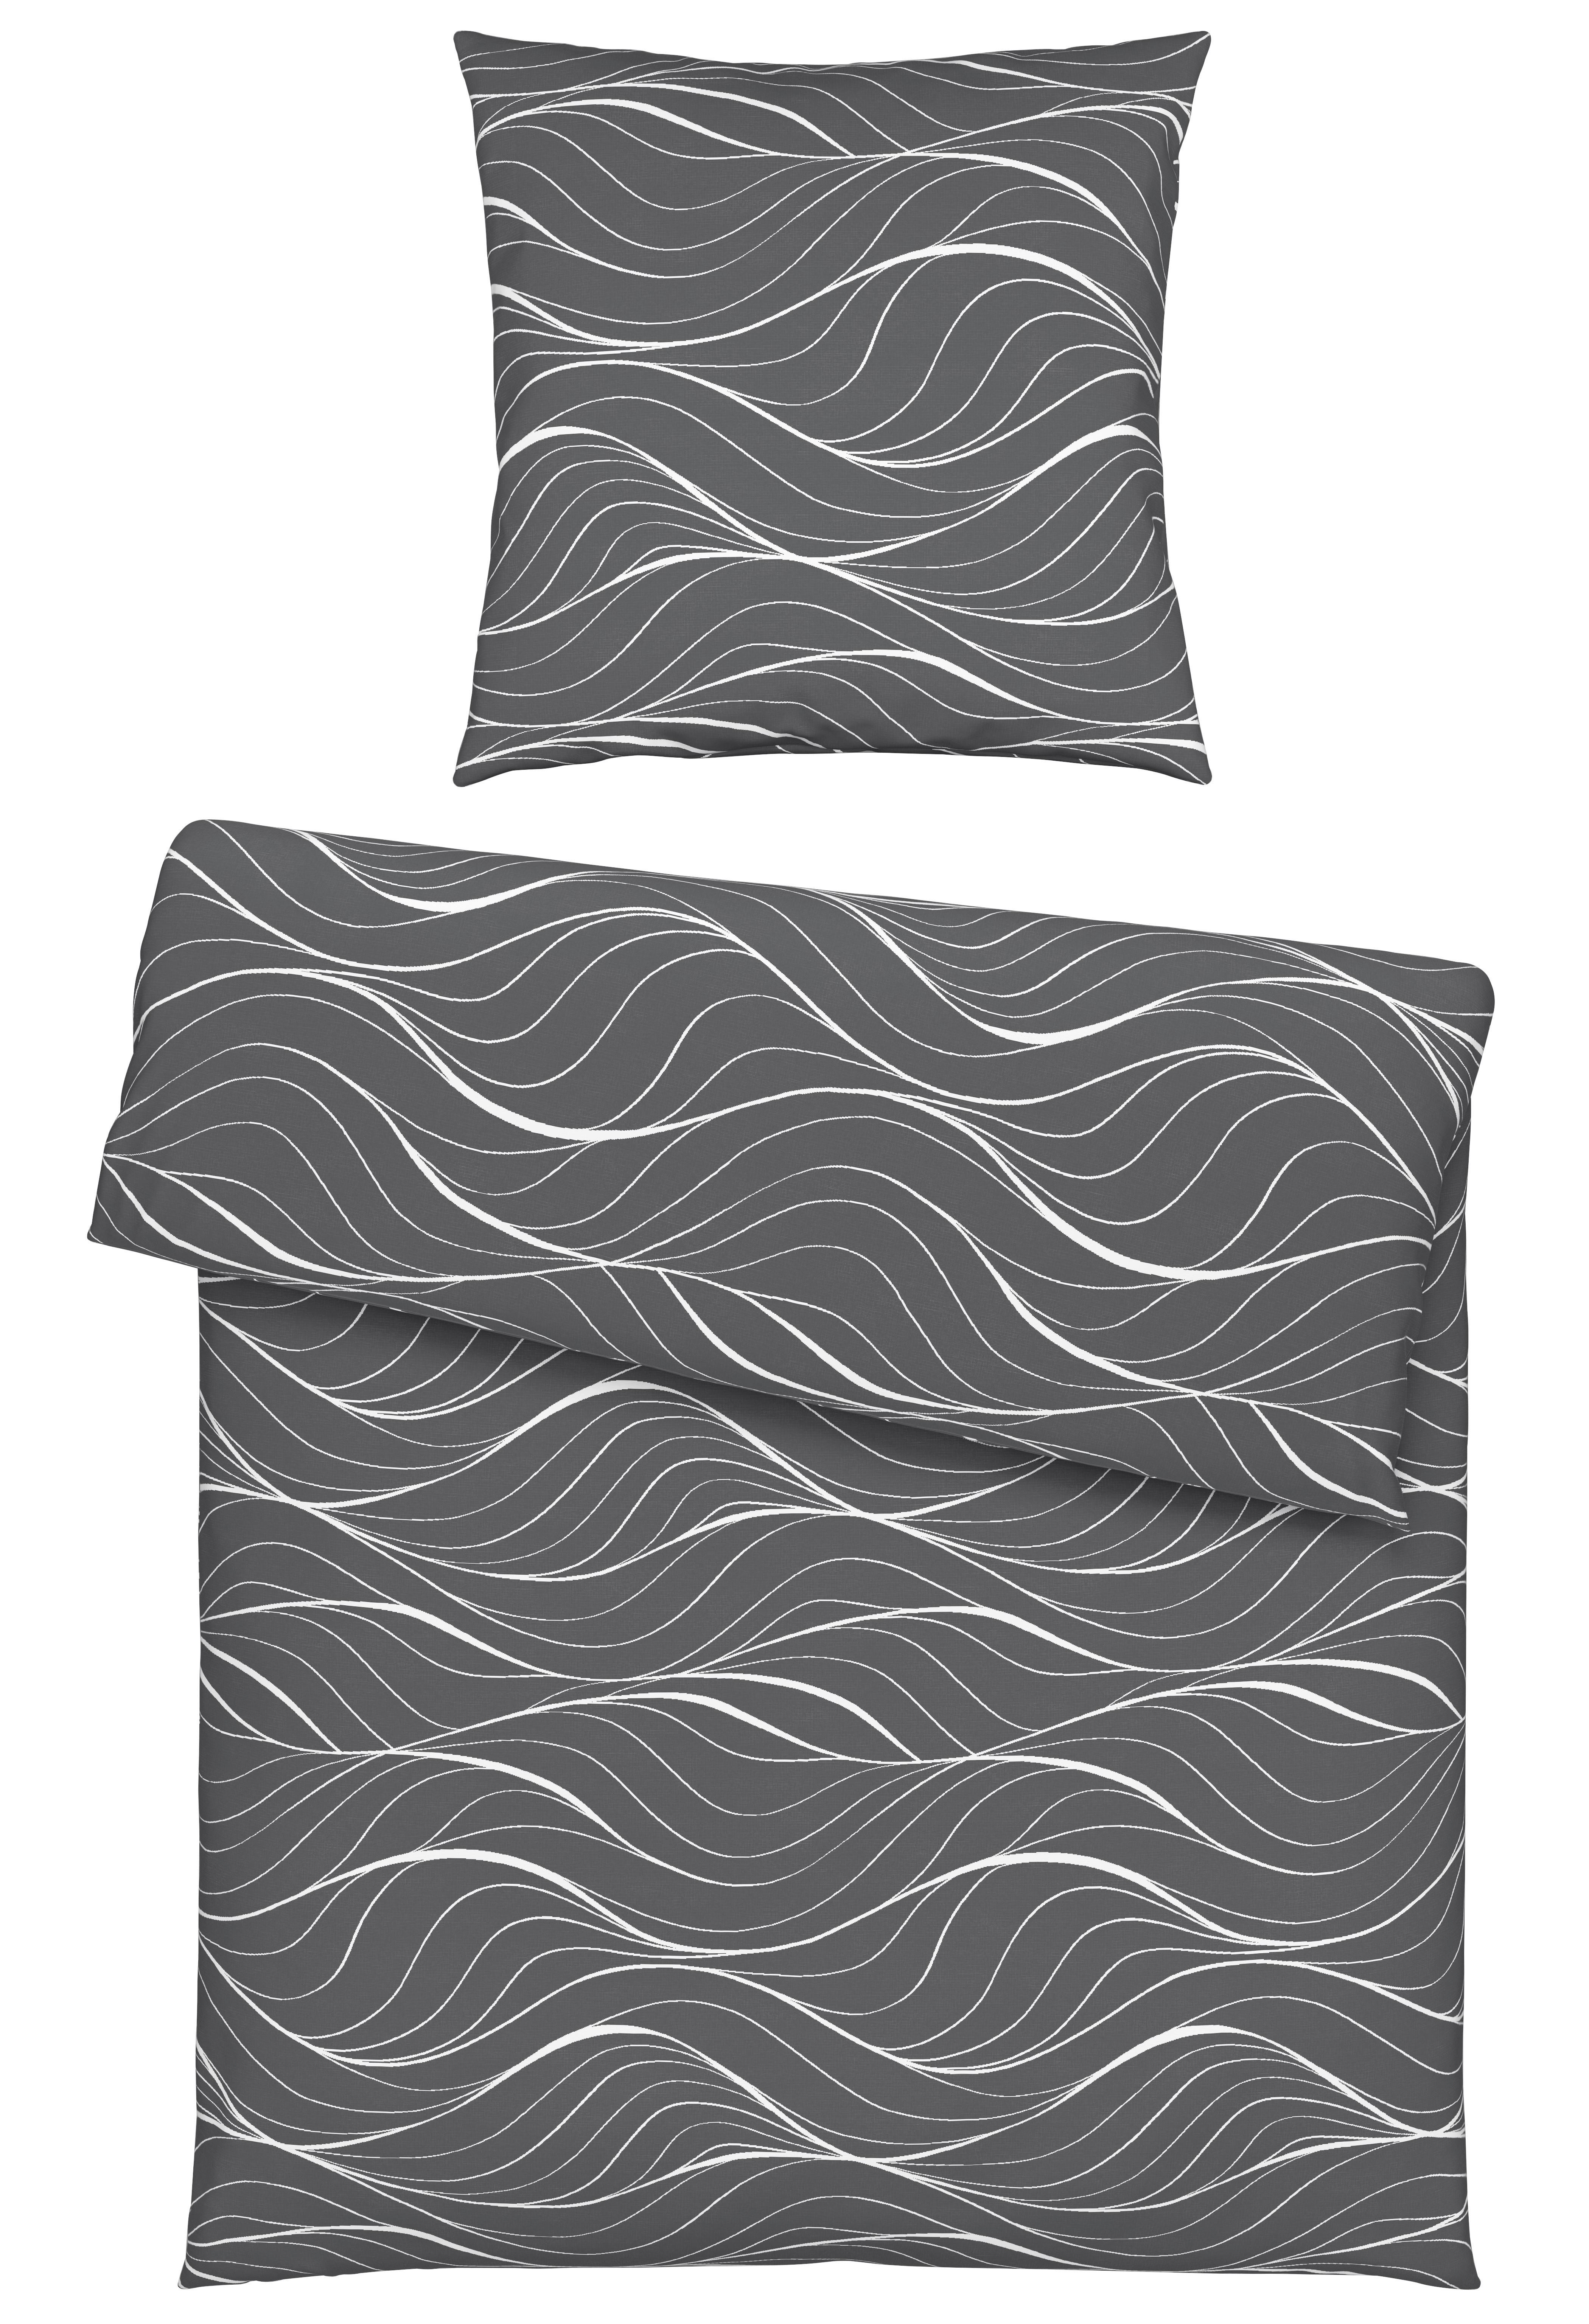 Bettwäsche Waves in Anthrazit ca. 135x200cm - Anthrazit, Textil (135/200cm) - Modern Living